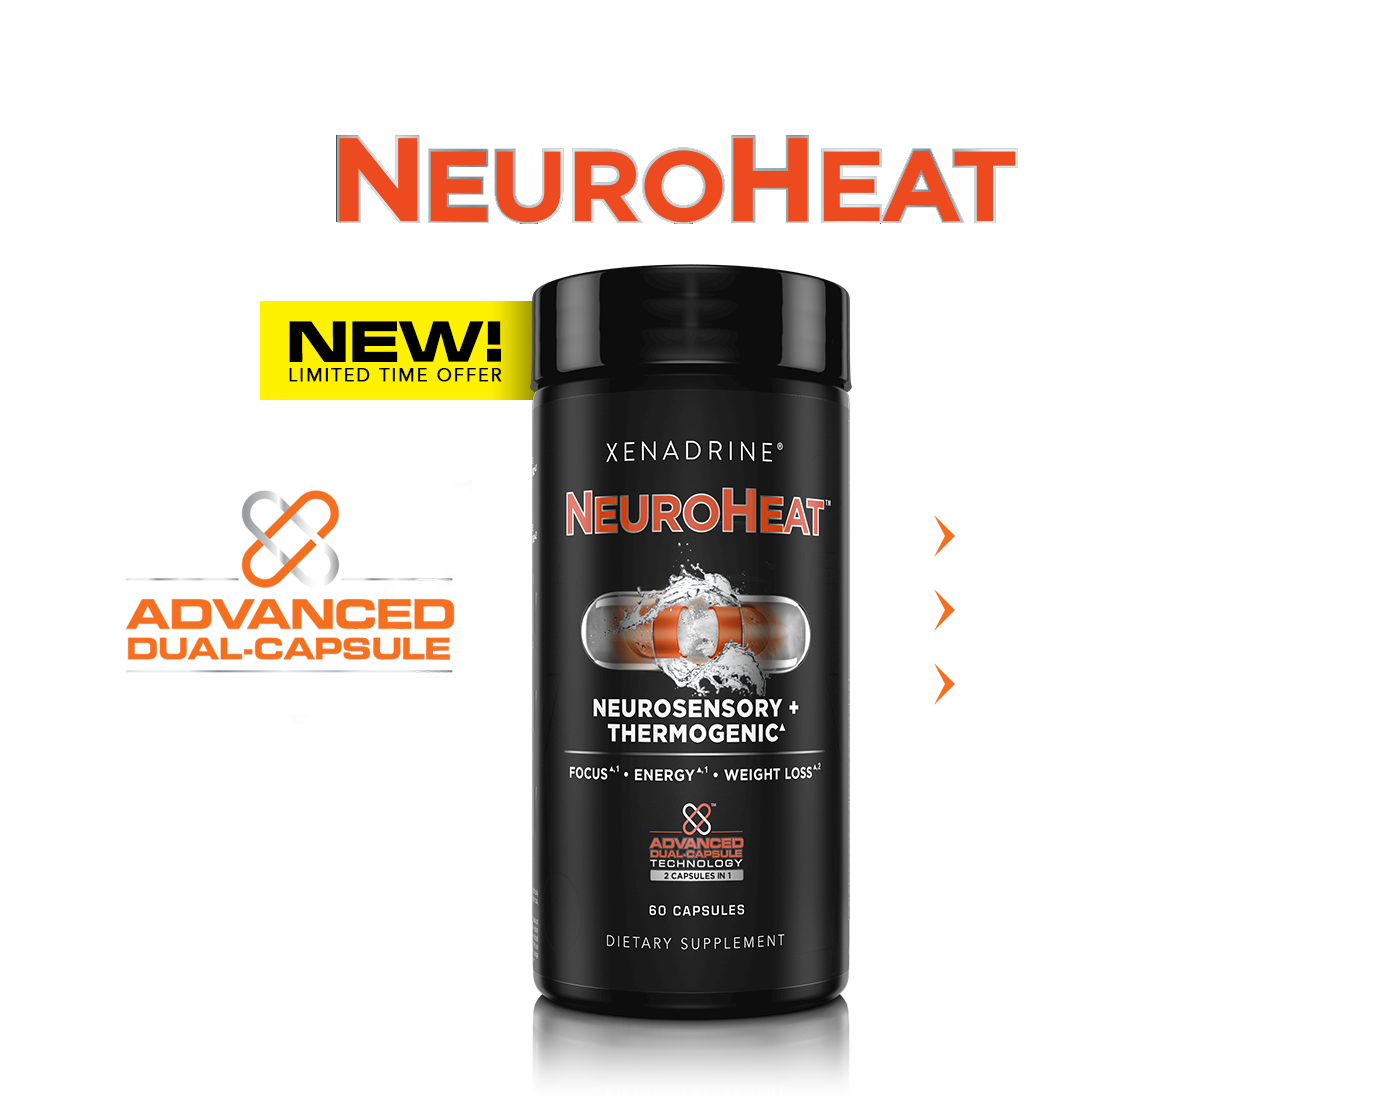 xen_neuro-heat_head_dsk